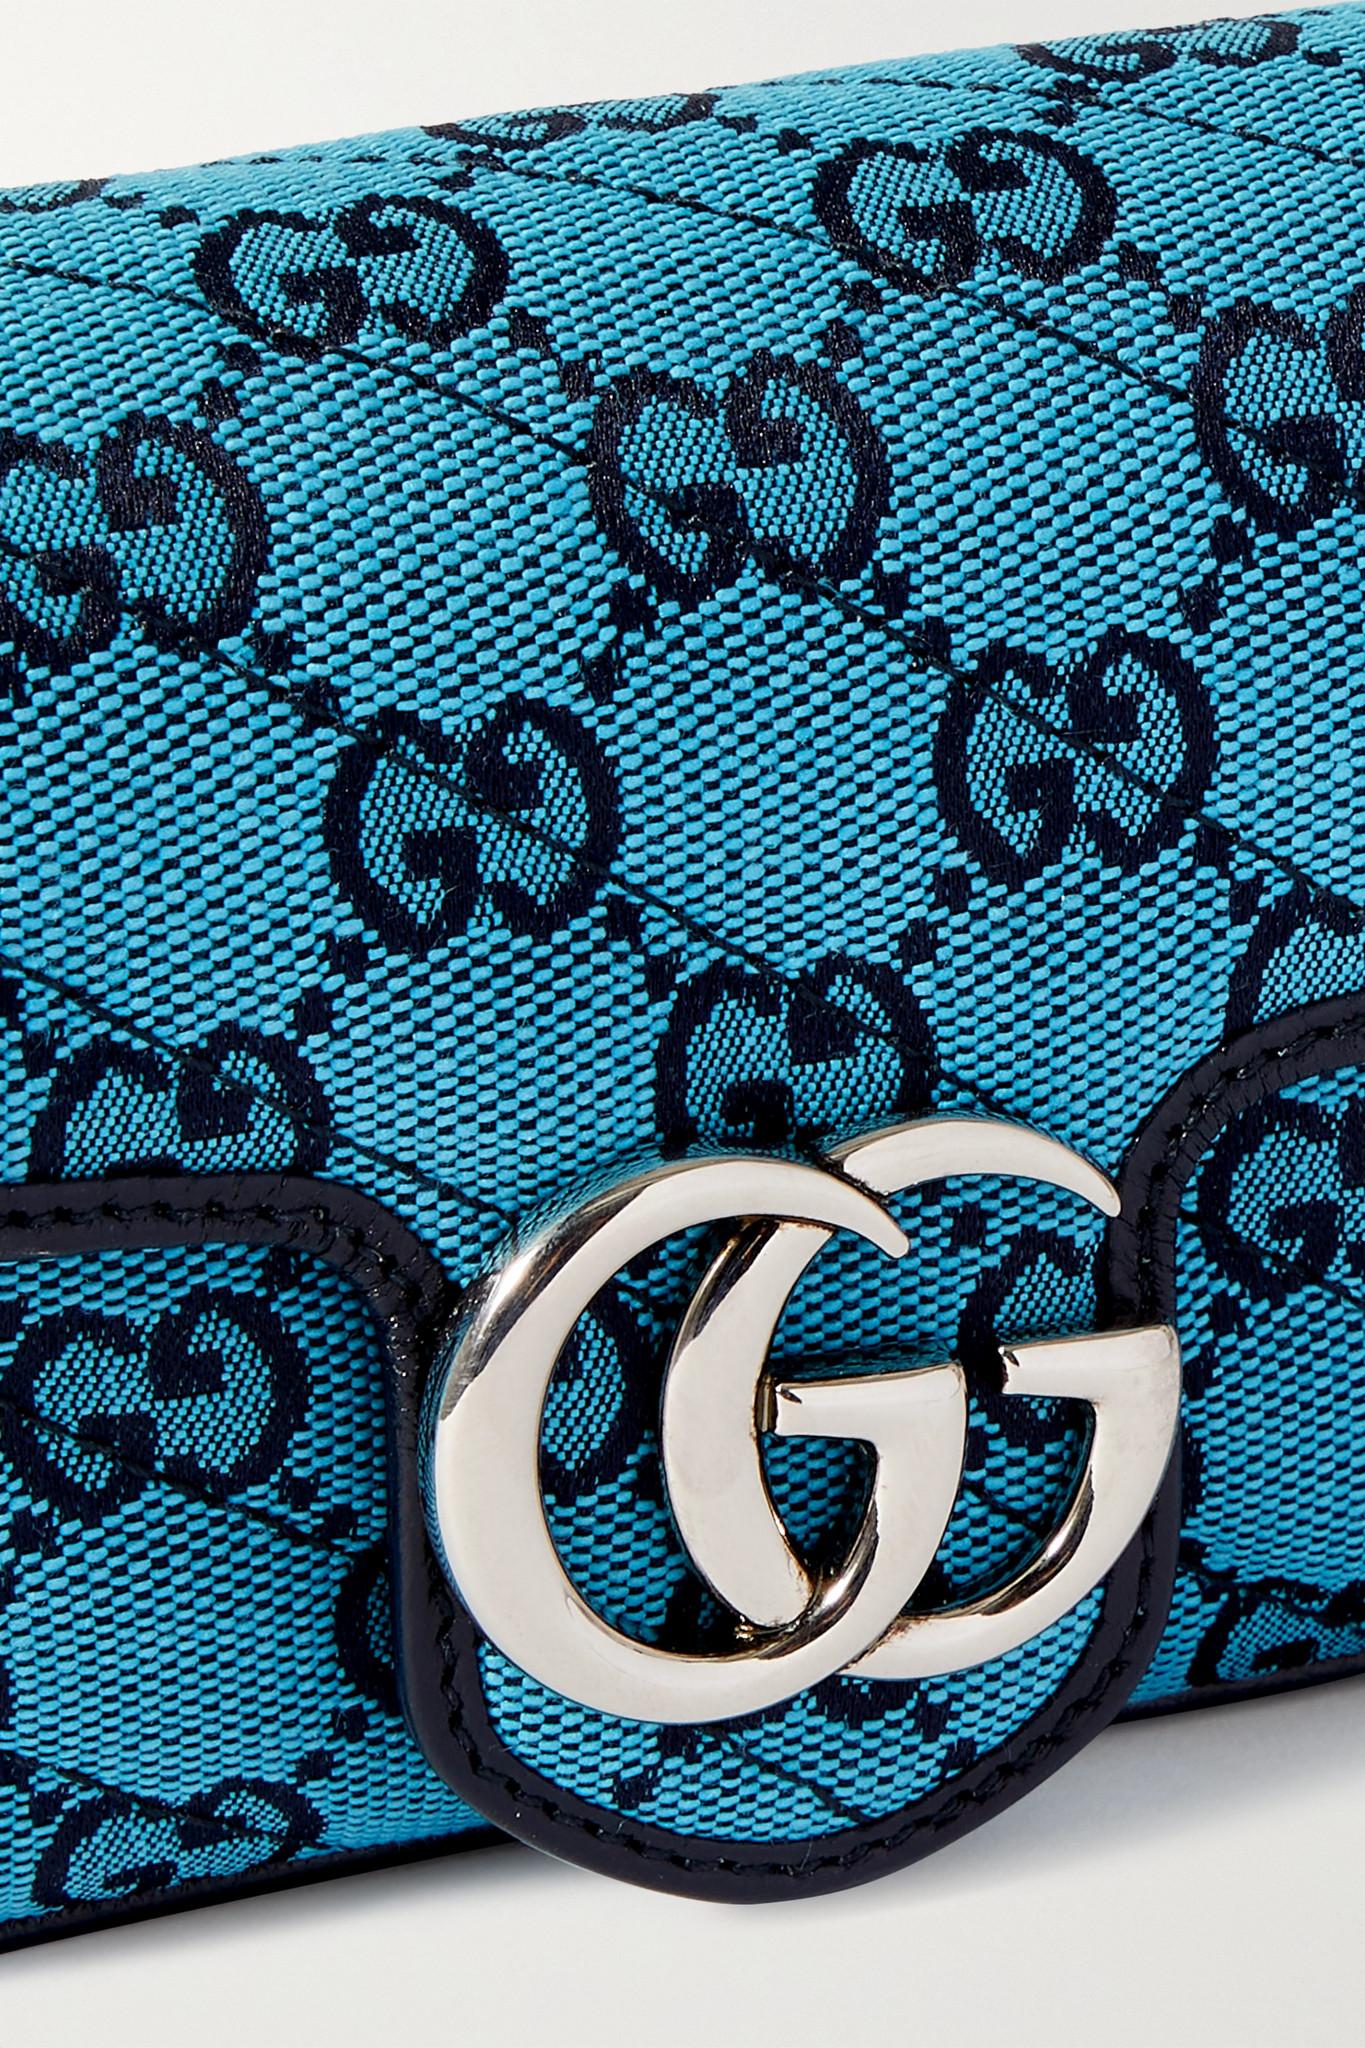 Gucci GG Marmont Multicolour Super Mini Bag in Blue